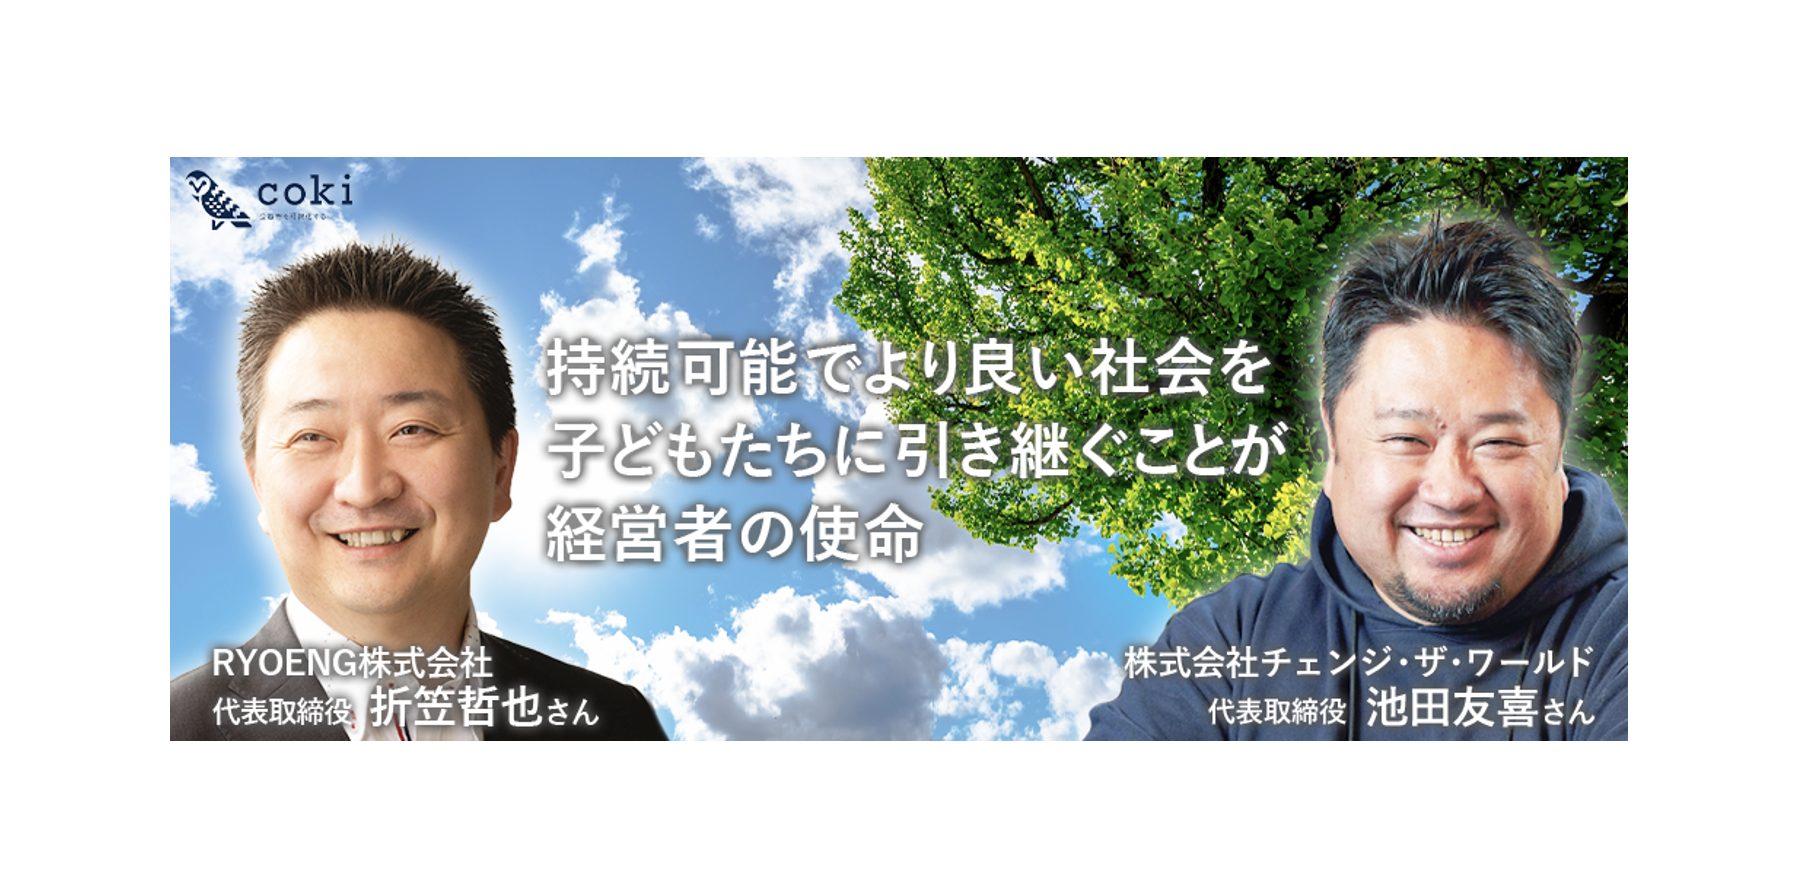 WEBメディア「coki」にてRYOENG株式会社の代表取締役、折笠哲也様から素敵なメッセージをいただきました！